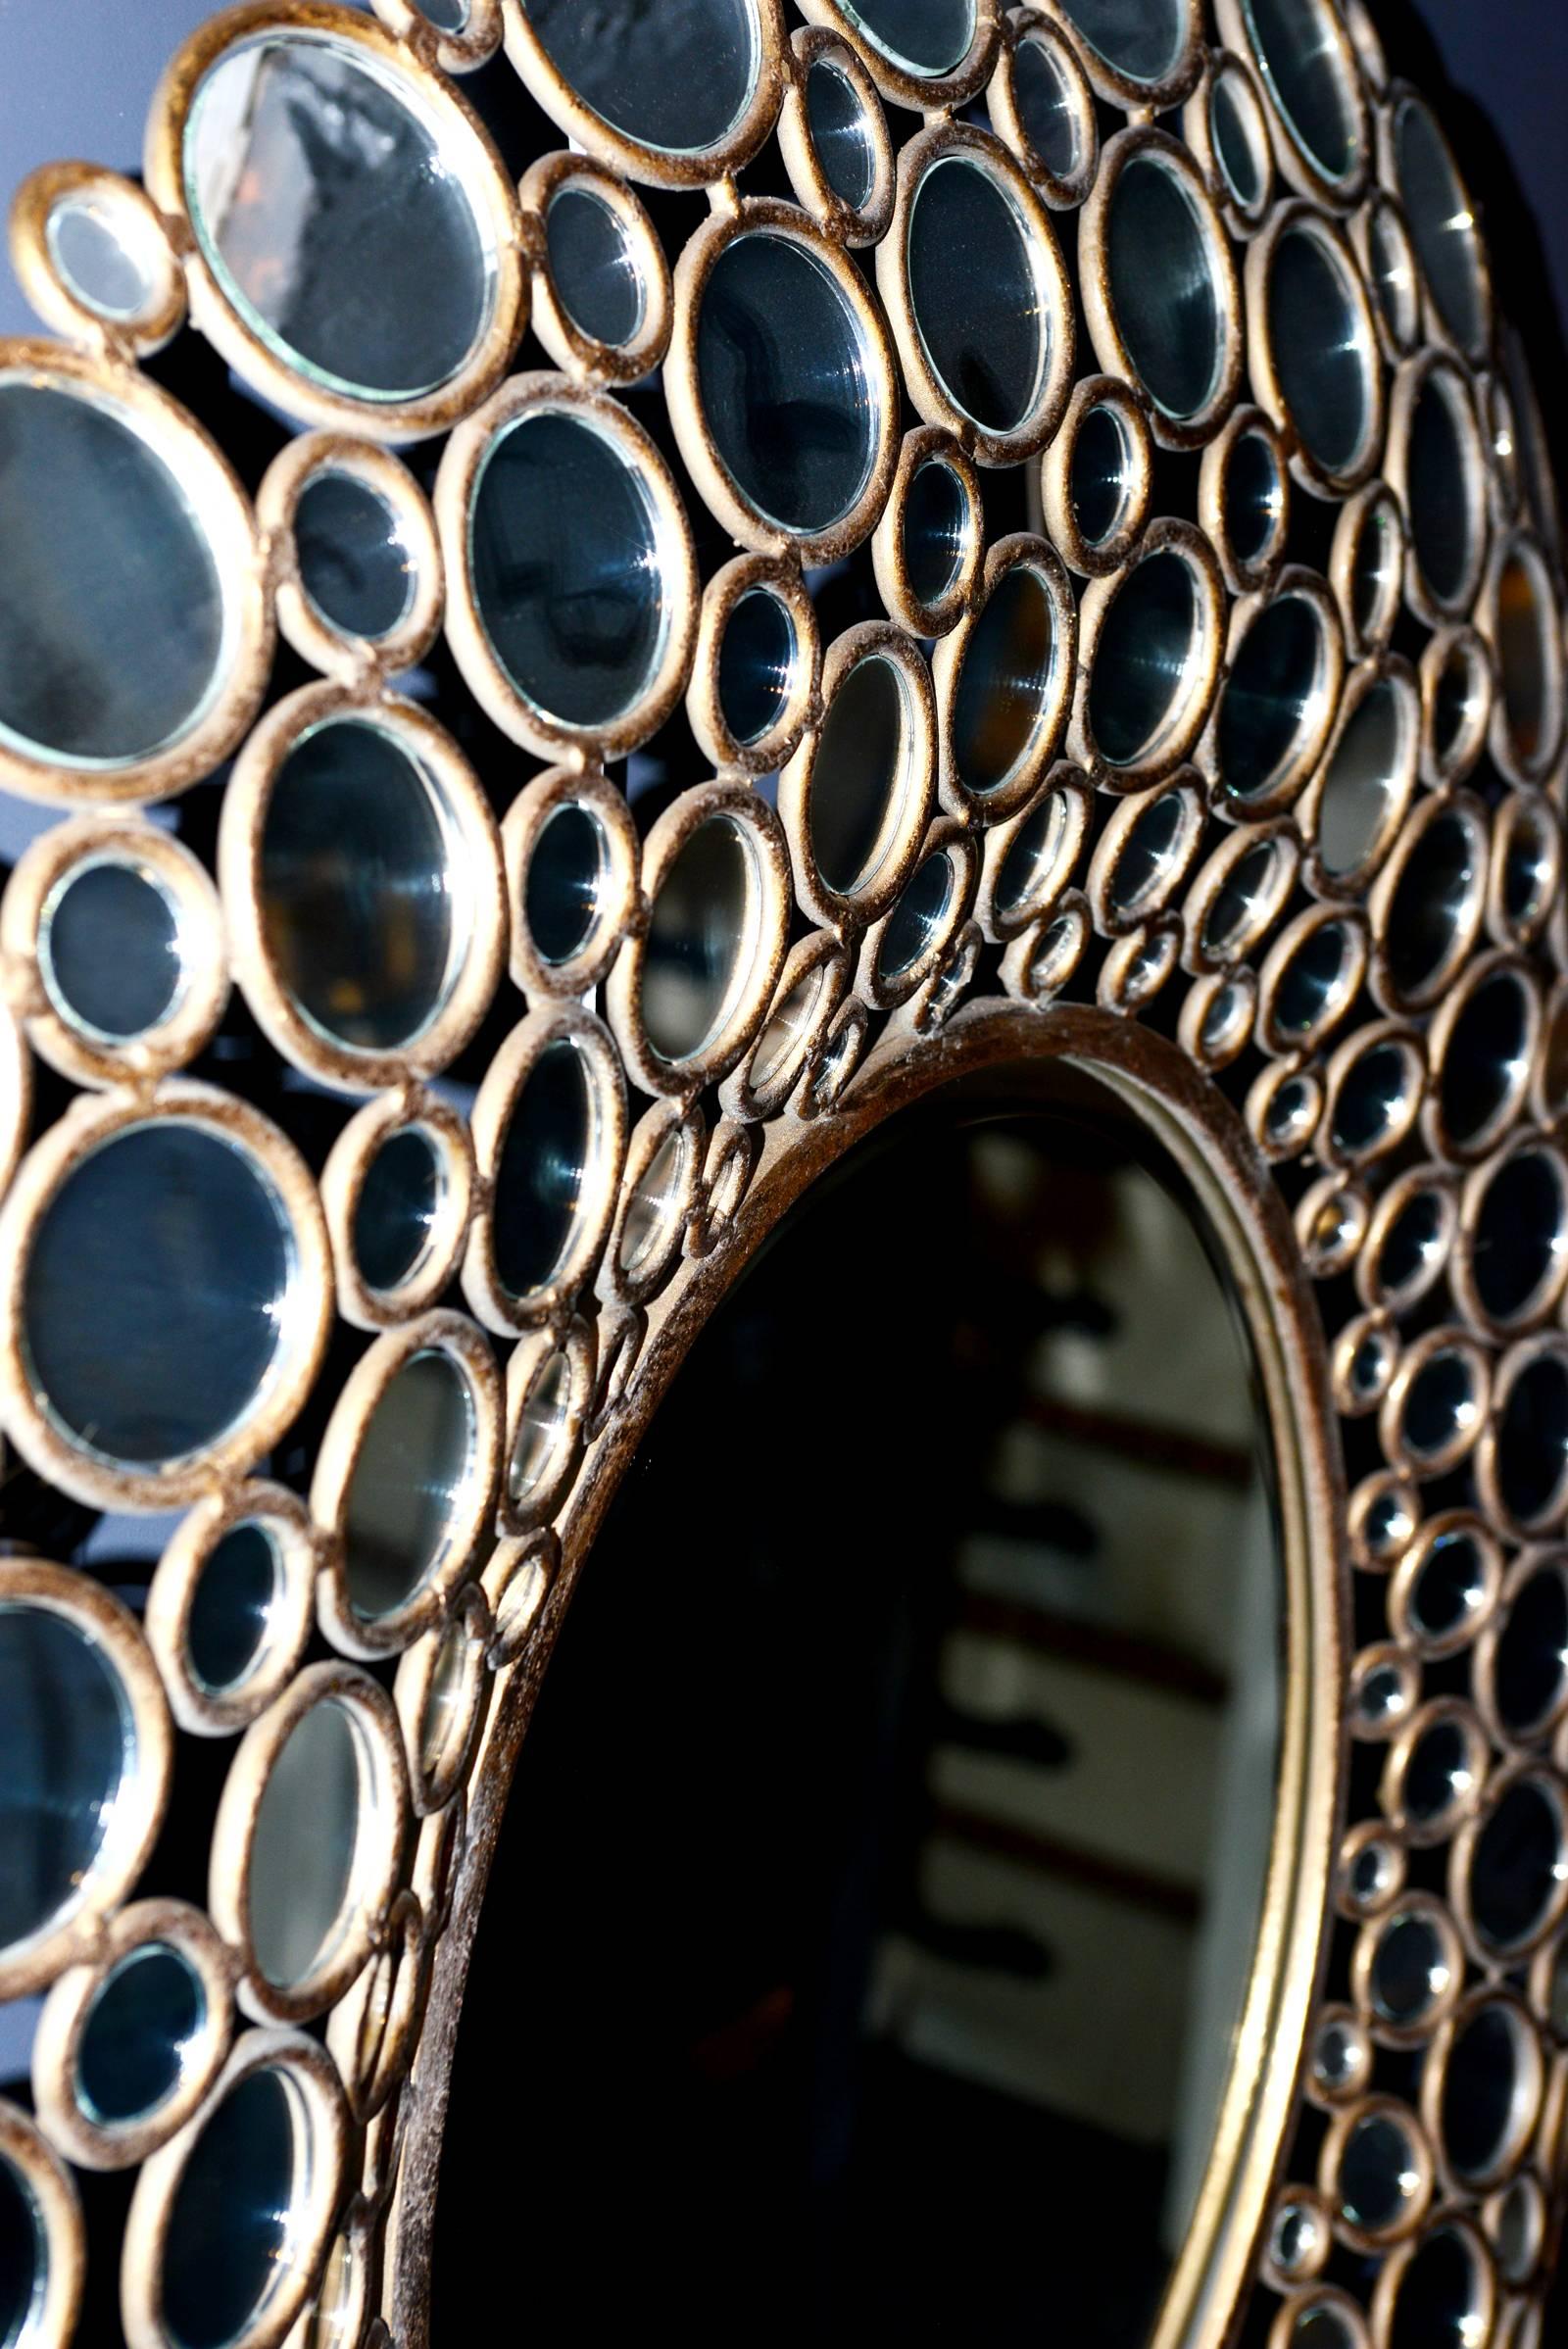 Spiegelpfau mit Metall und Spiegelglas, 2016
